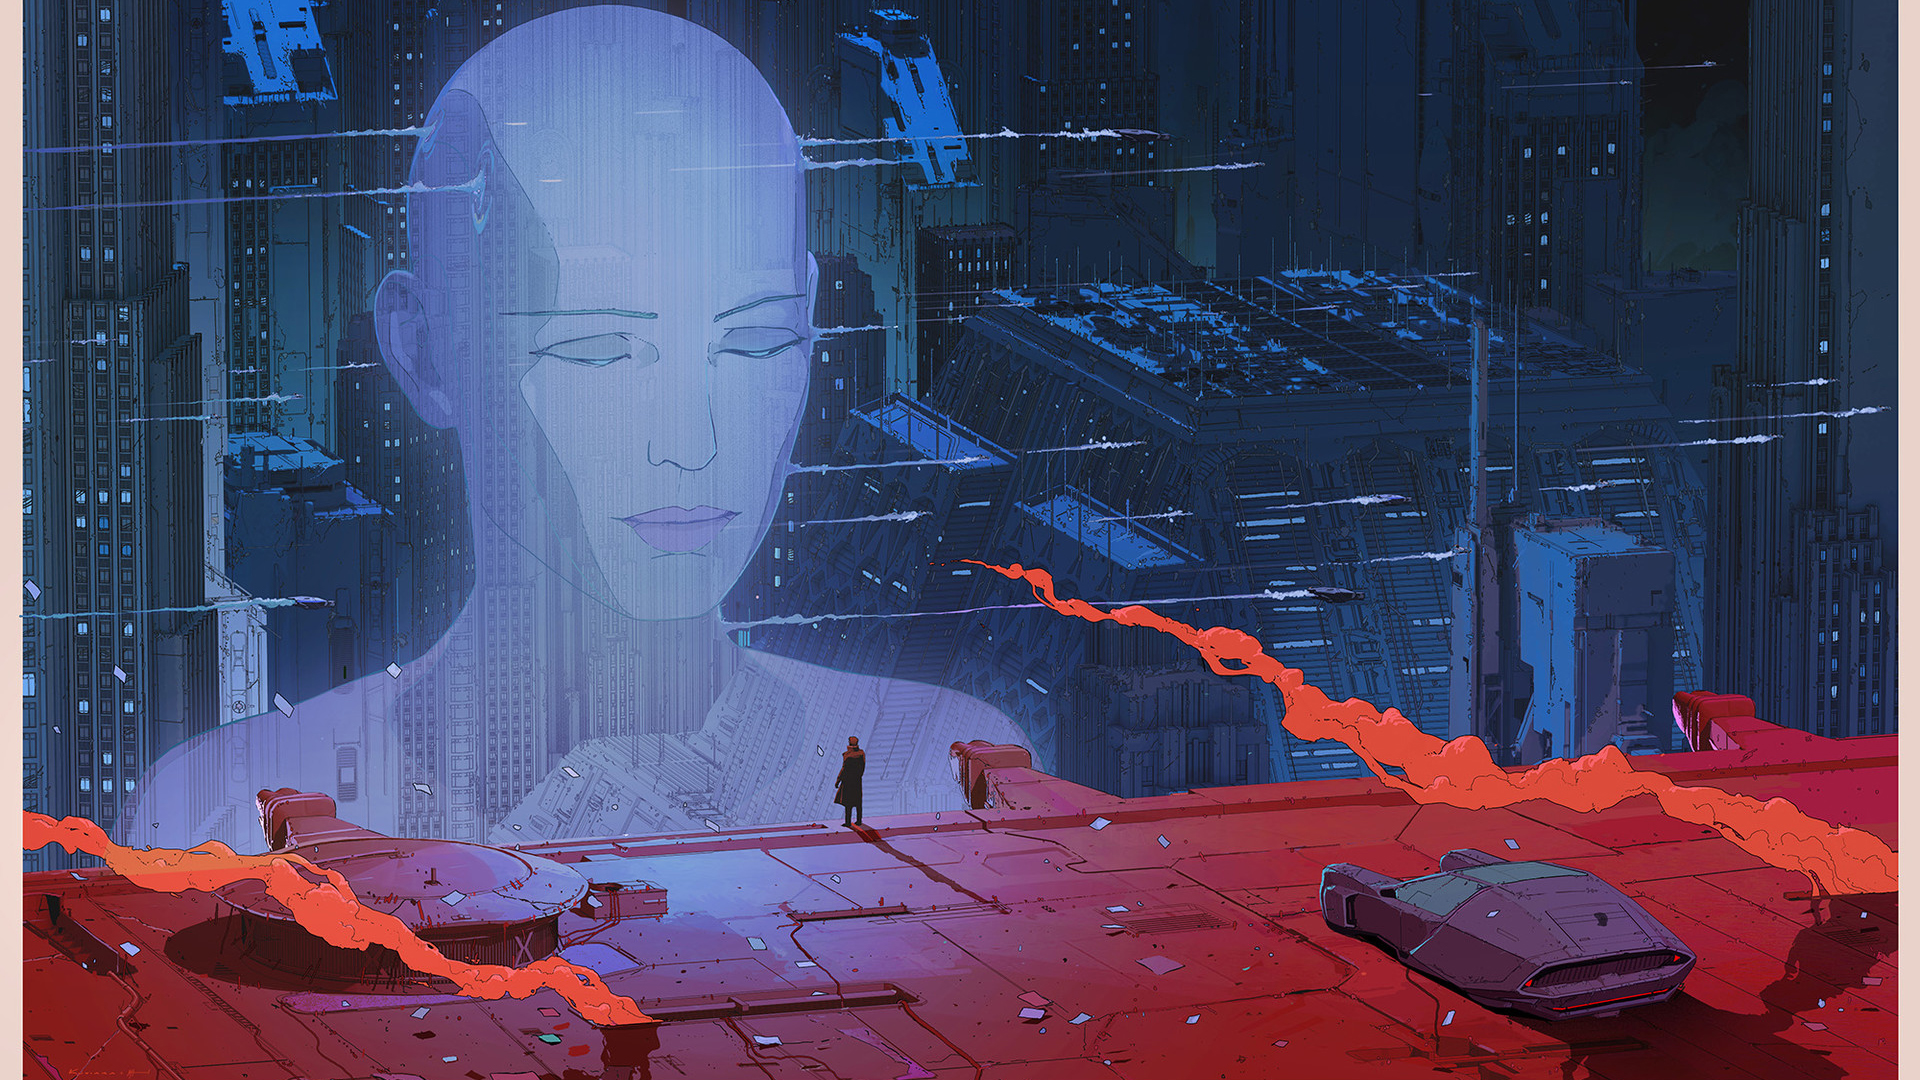 General 1920x1080 digital art Blade Runner 2049 Blade Runner cyberpunk science fiction